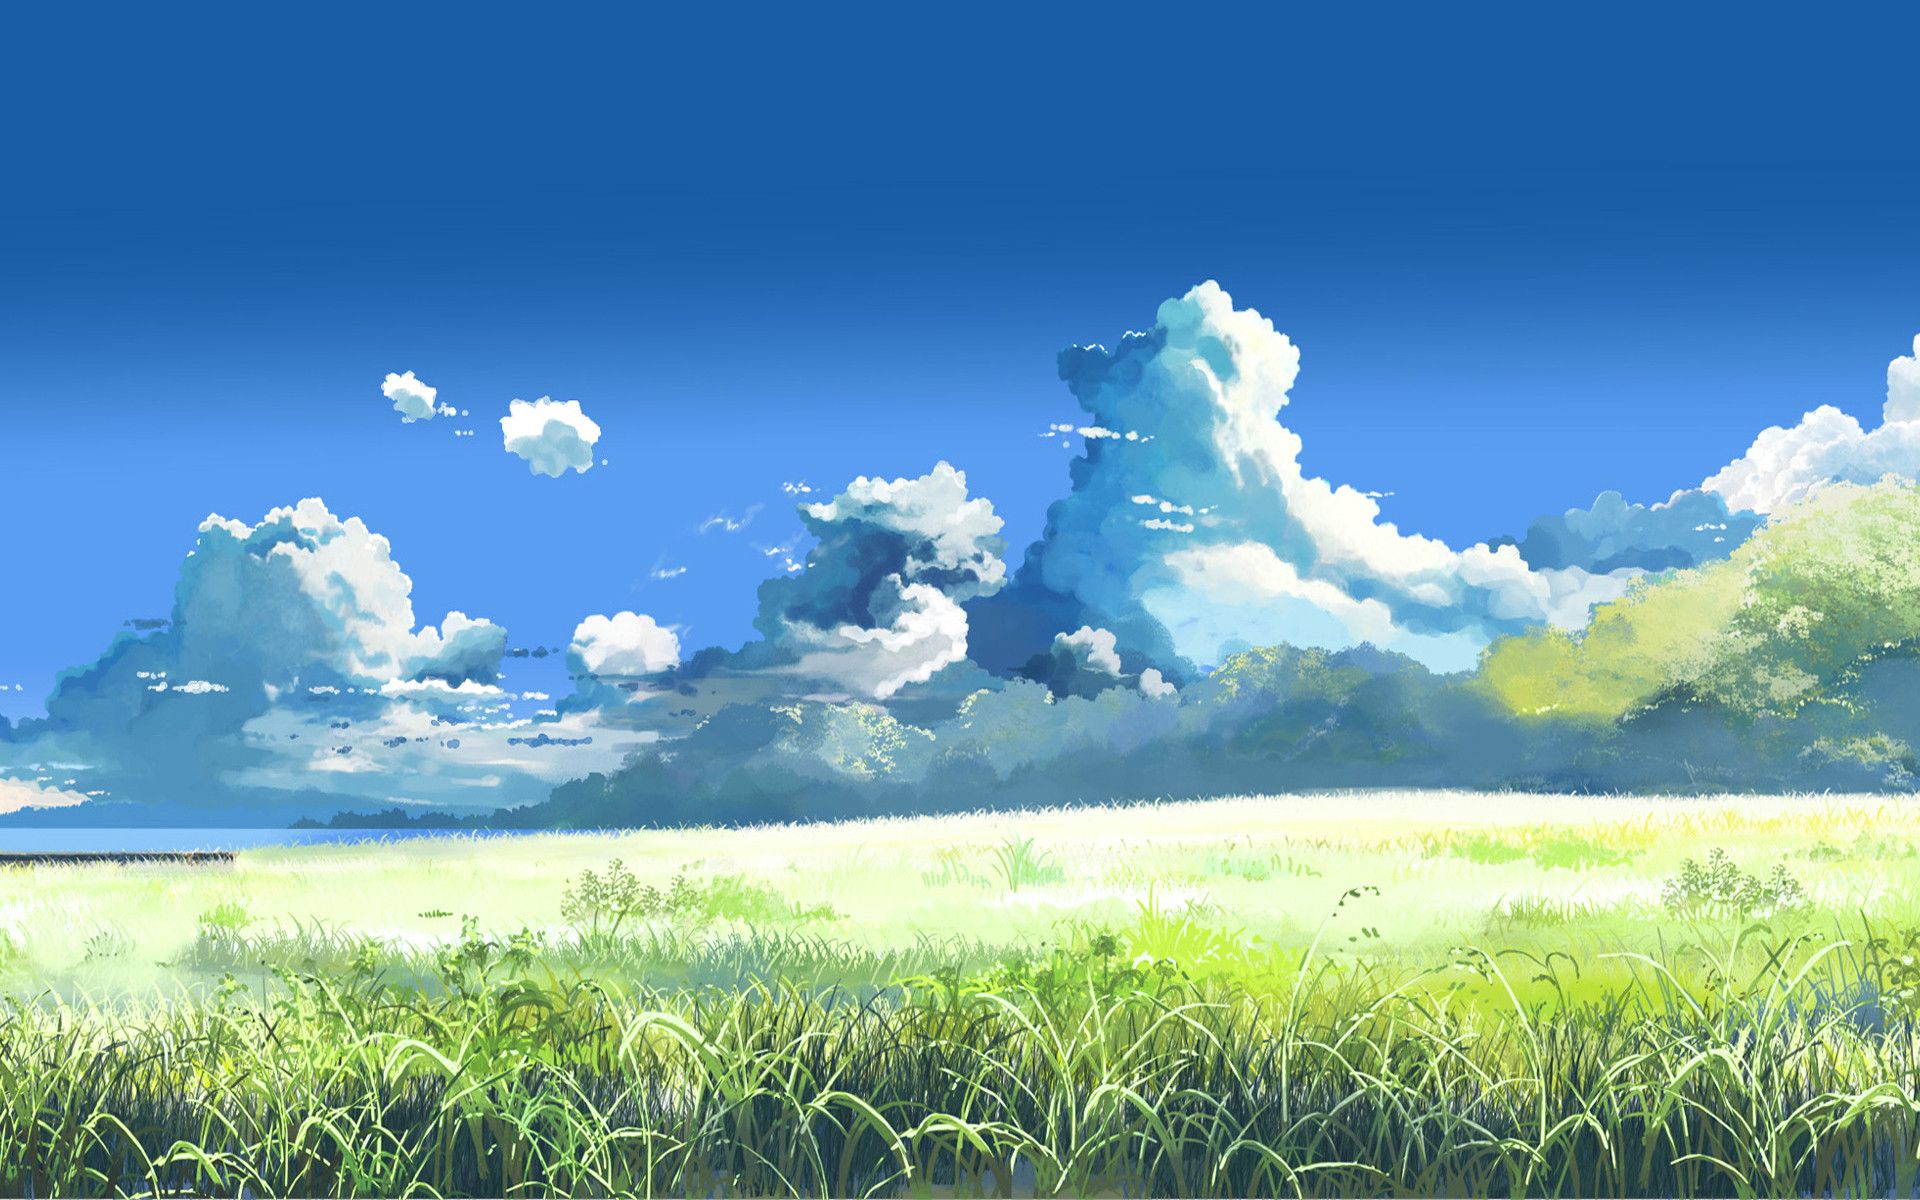 Thiên nhiên và Anime là hai thứ mà bạn yêu thích? Hãy xem ngay hình nền thiên nhiên Anime với những cảnh đẹp như tranh, vừa huyền bí vừa mơ mộng. Với hình ảnh nhân vật Anime trong bối cảnh thiên nhiên tươi đẹp, hình nền này sẽ khiến bạn phải thốt lên \